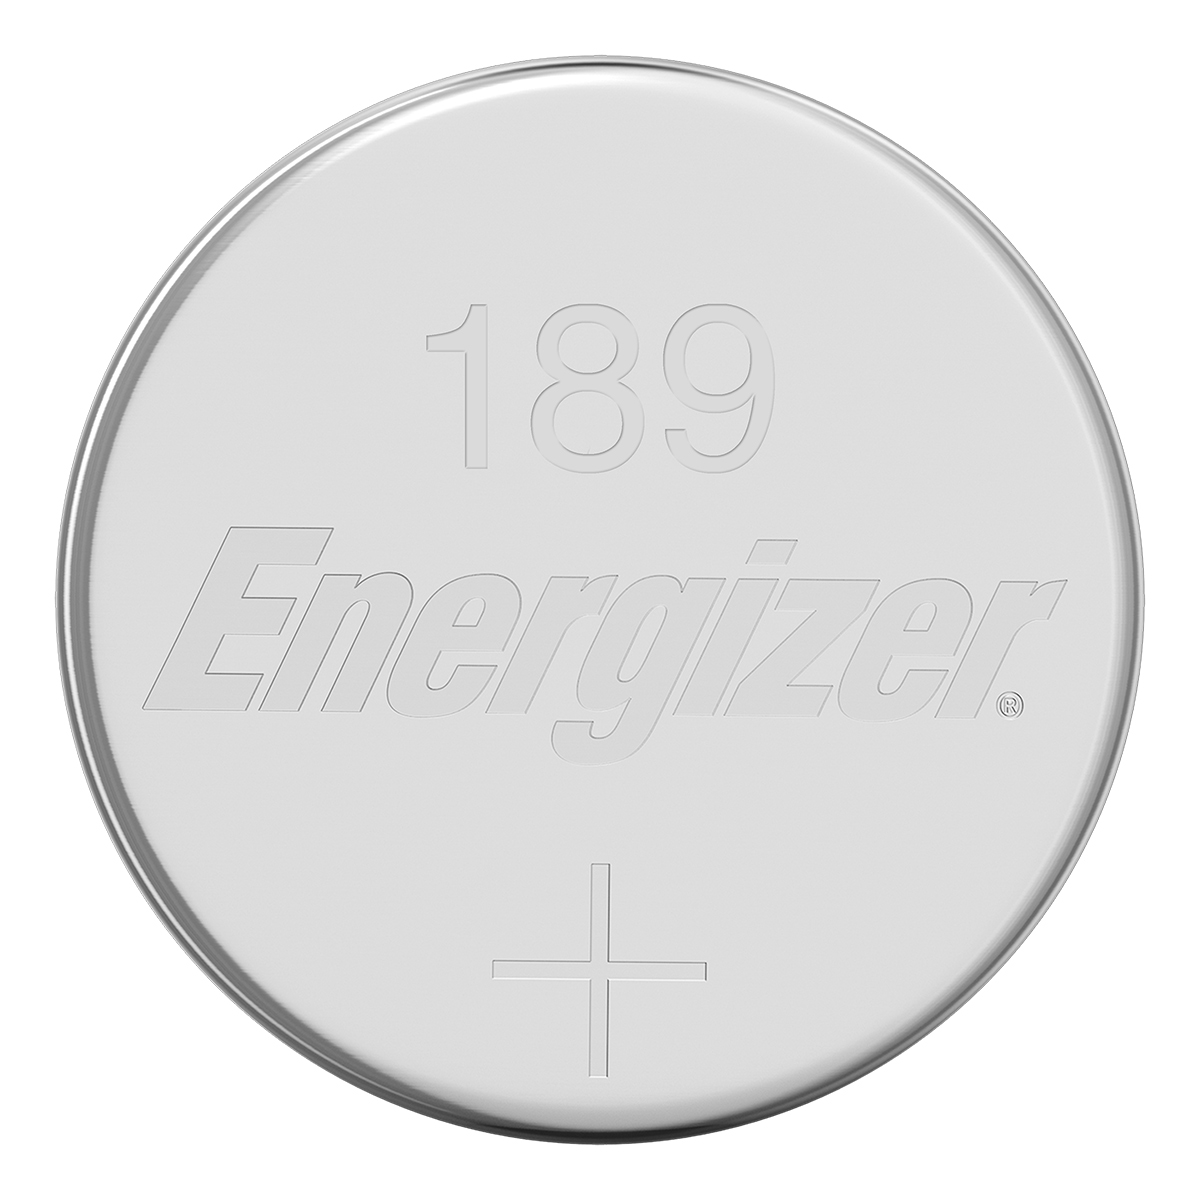 Batterie a bottone alcaline ENERGIZER 189 LR 54